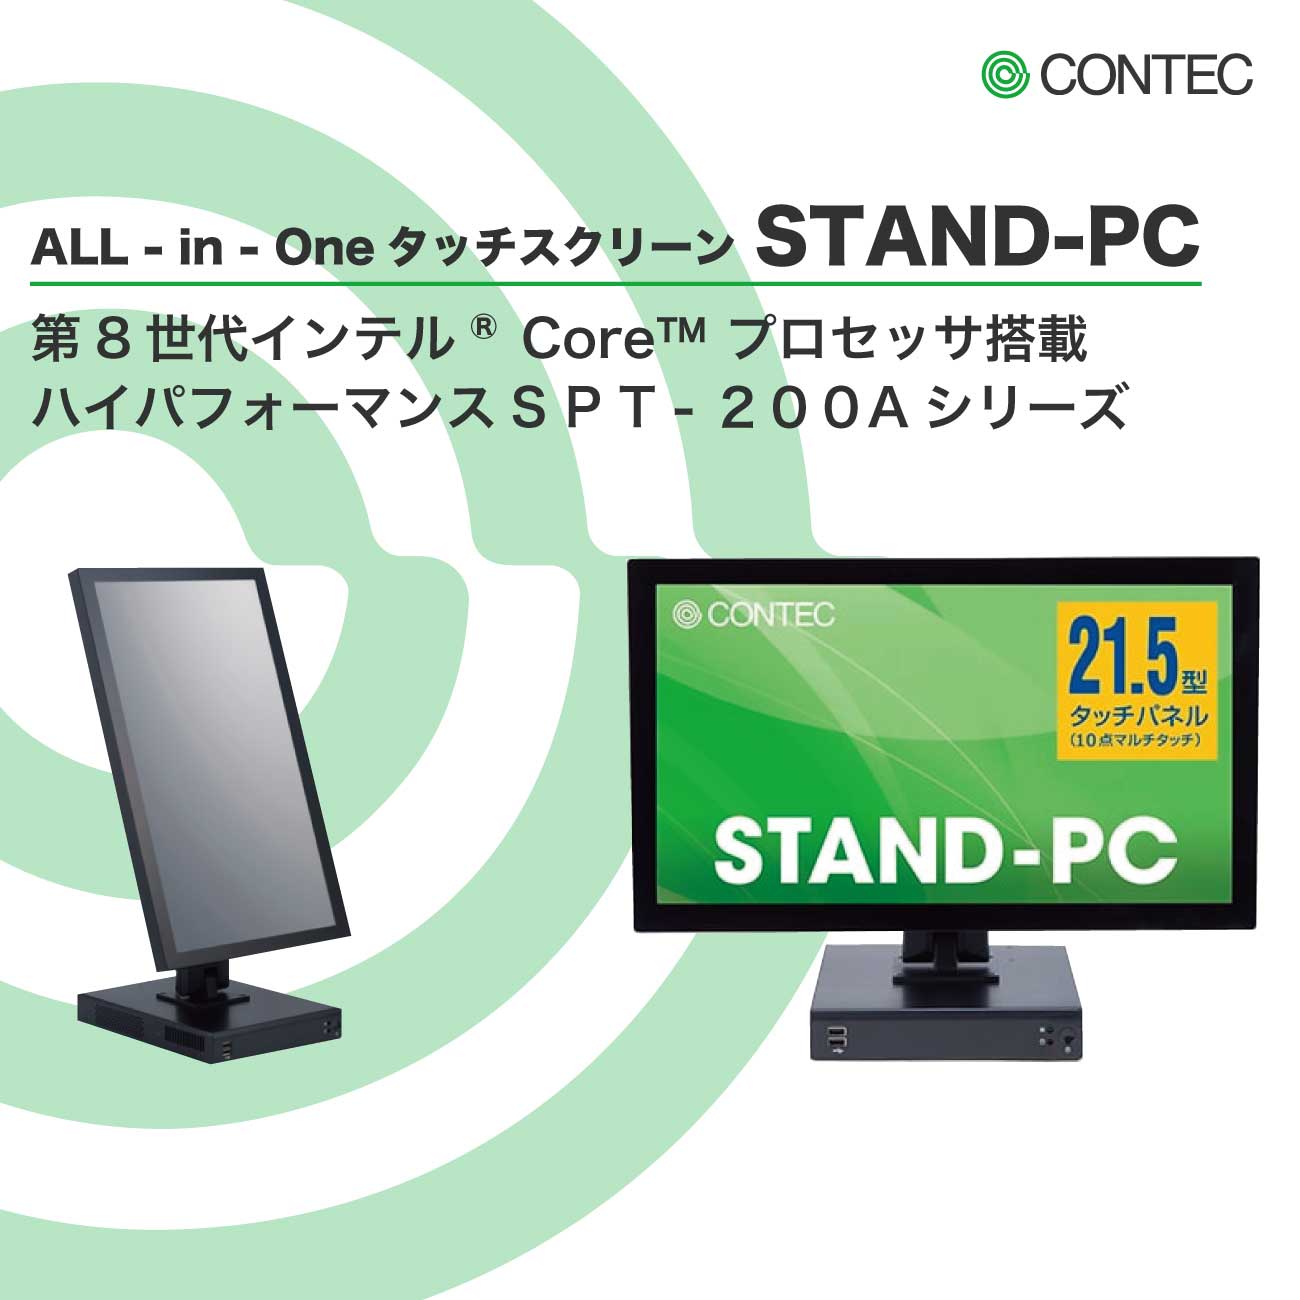 STAND-PC 200シリーズ